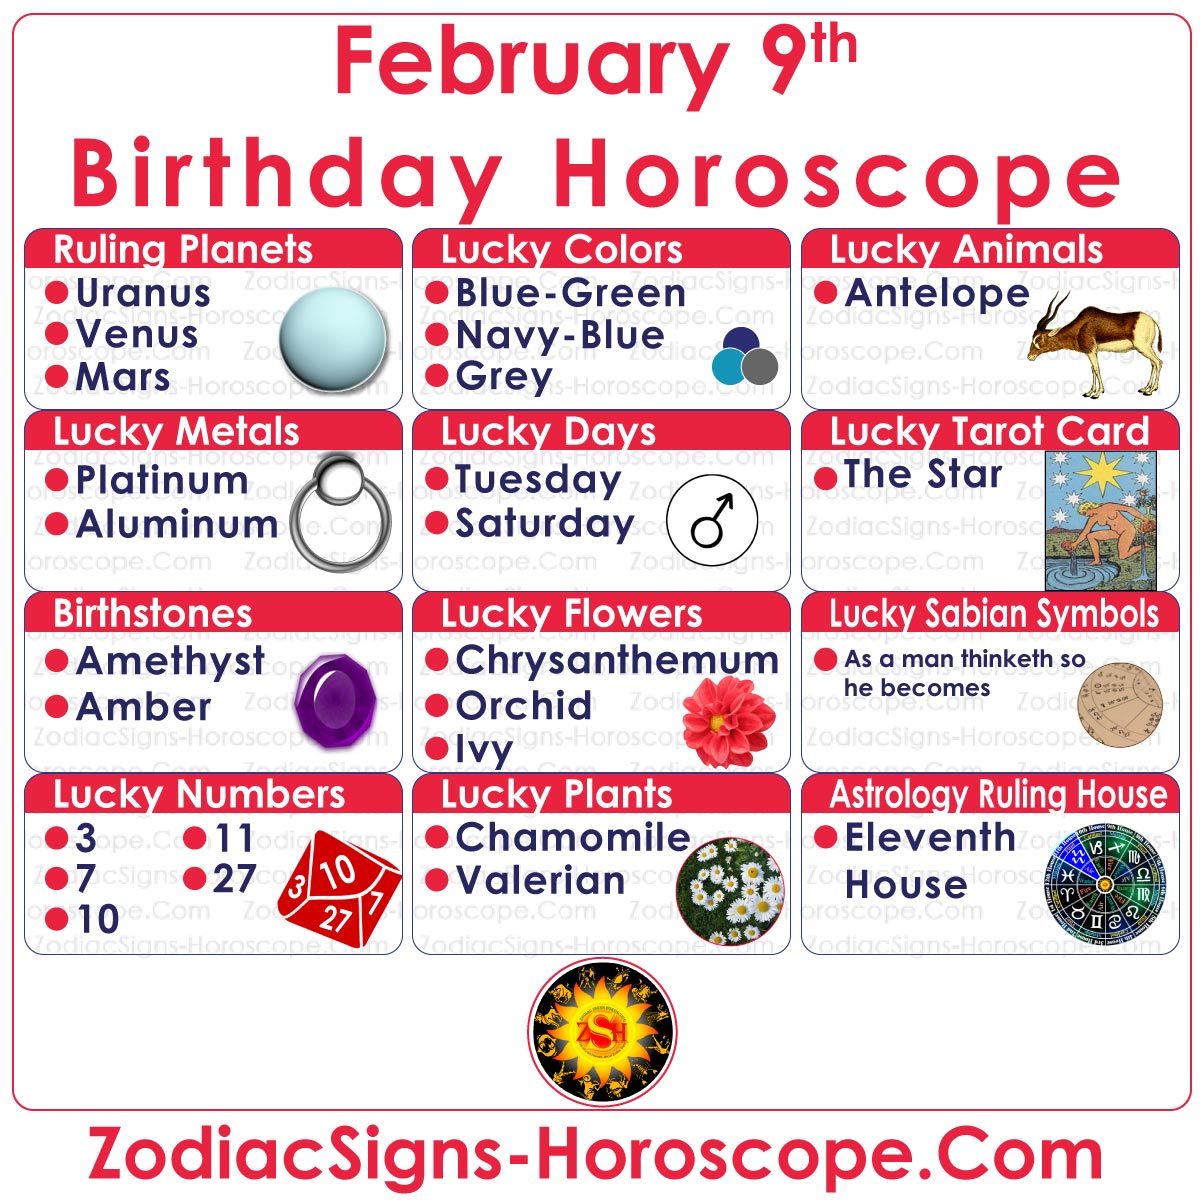 More Horoscopes for Sagittarius